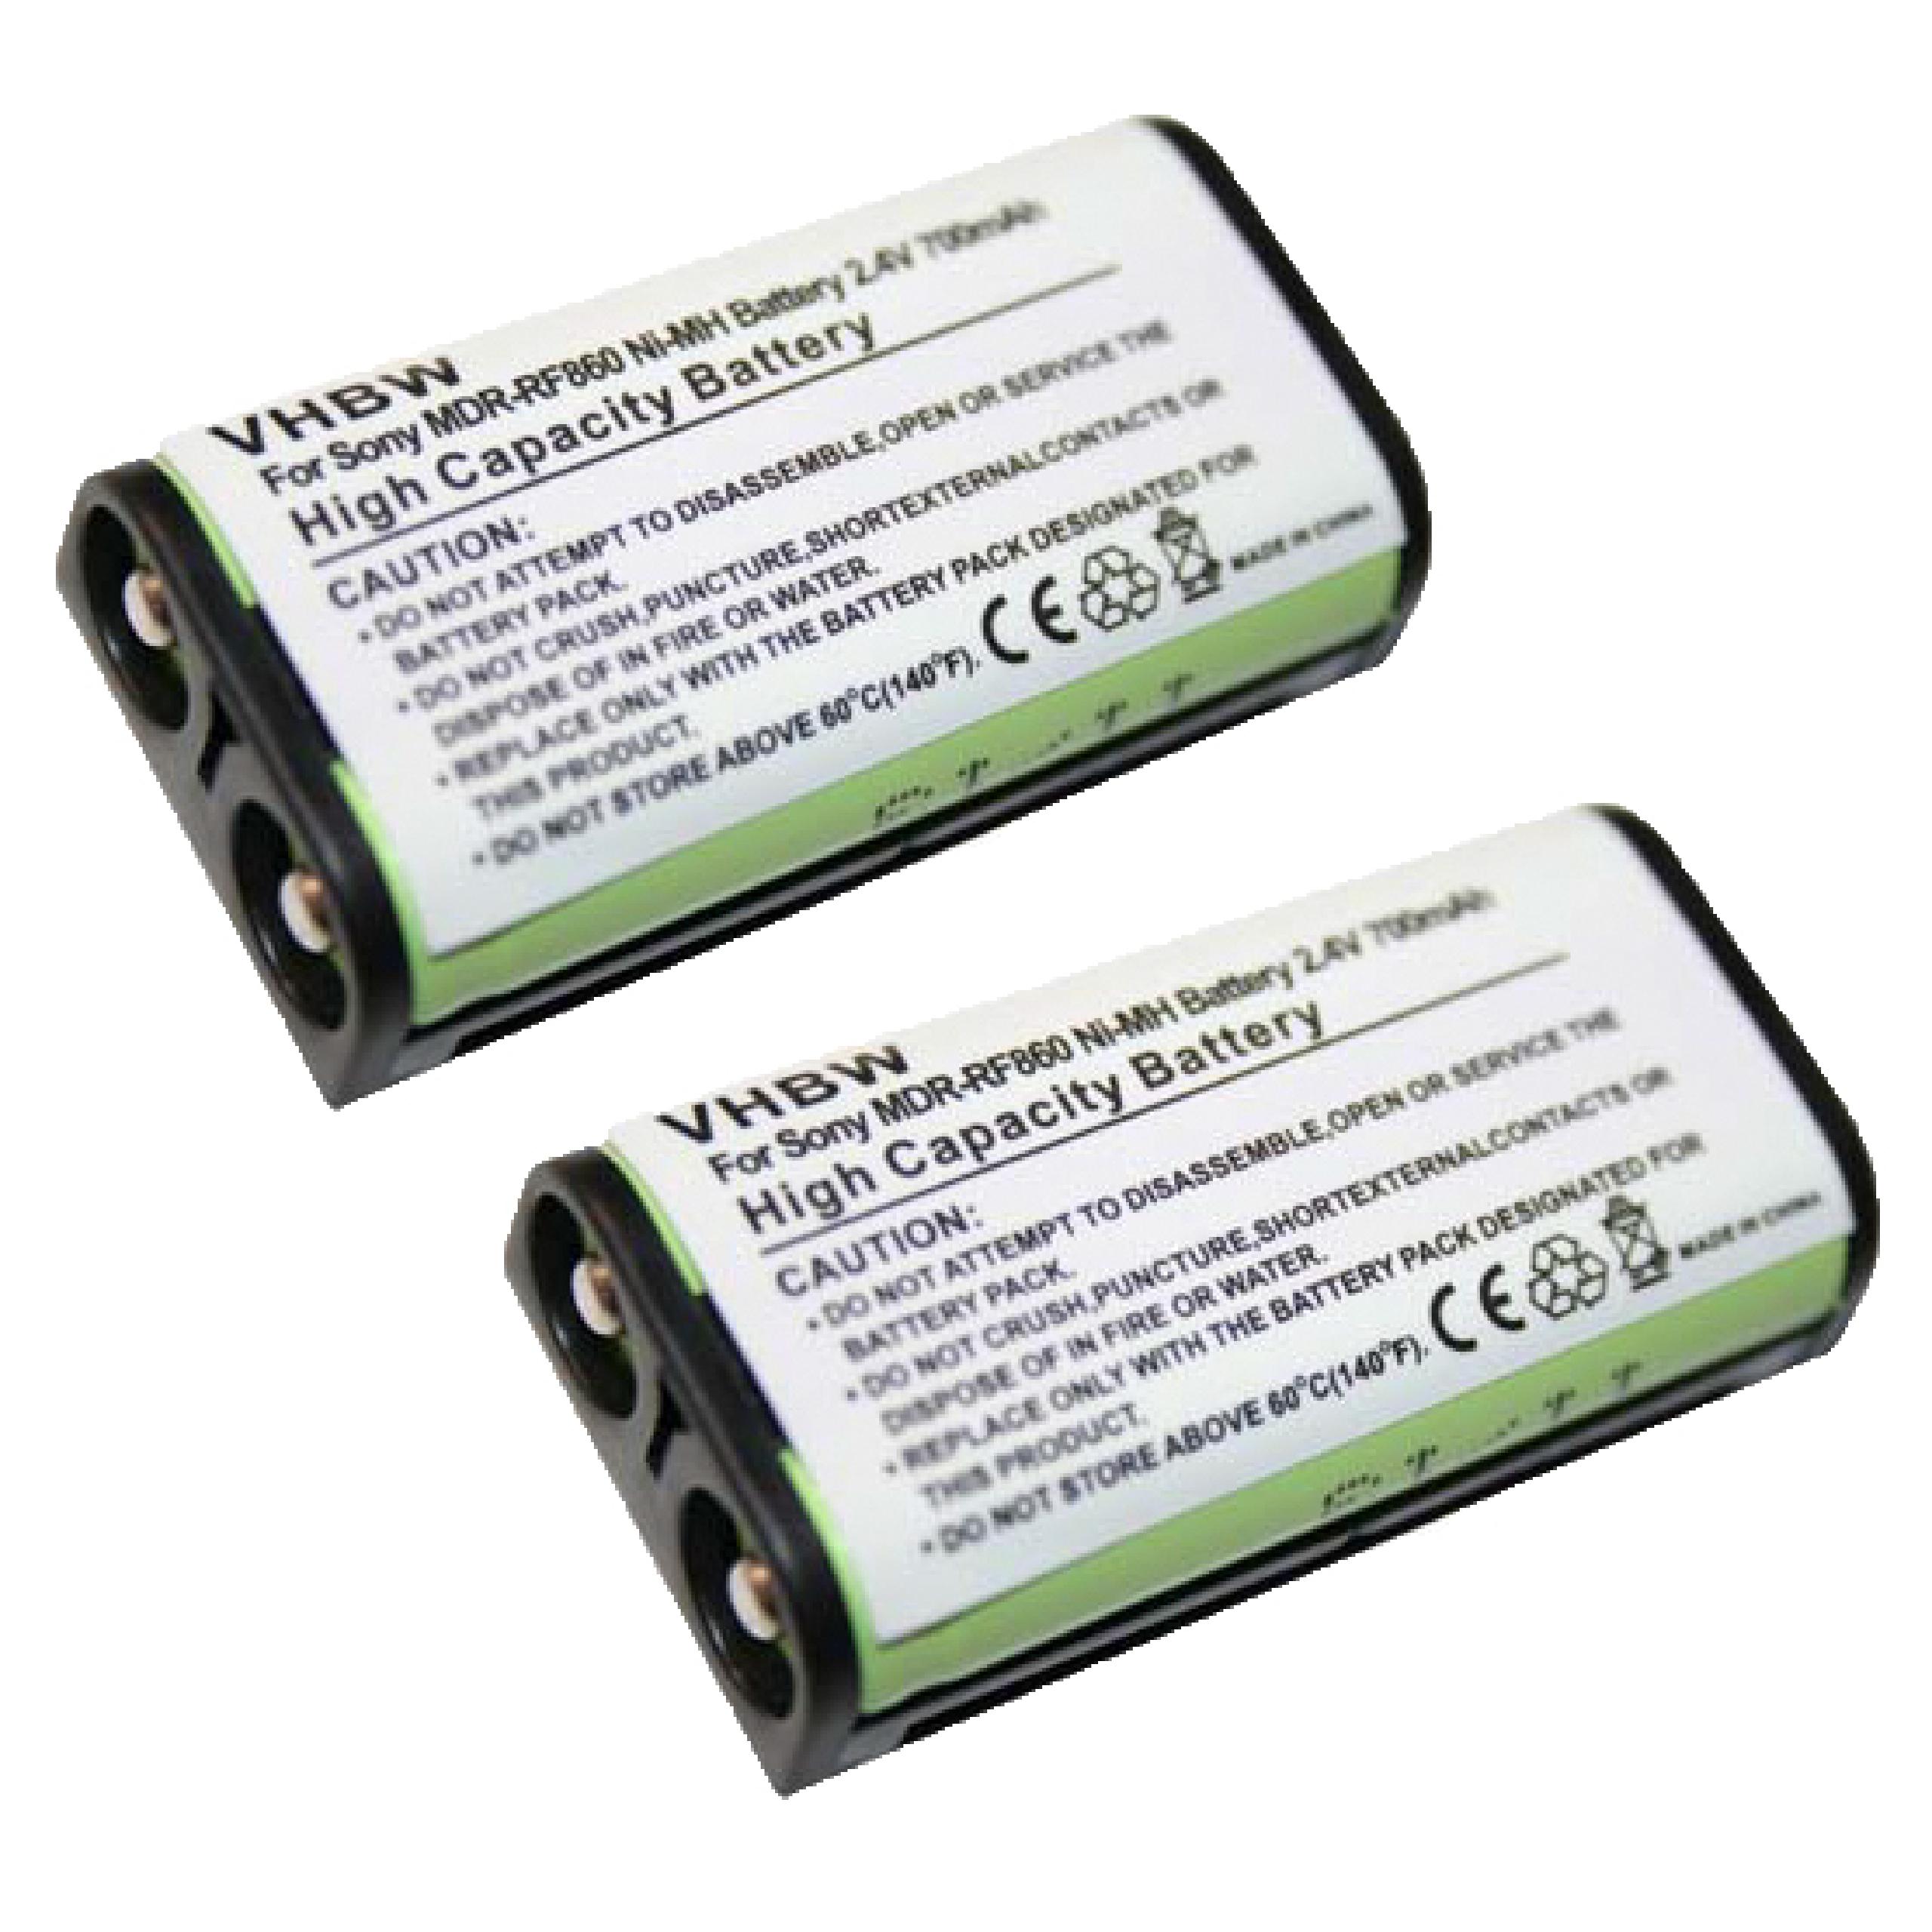 Batteries (2x pièces) remplace Sony BP-HP550-11 pour casque audio - 700mAh 2,4V NiMH